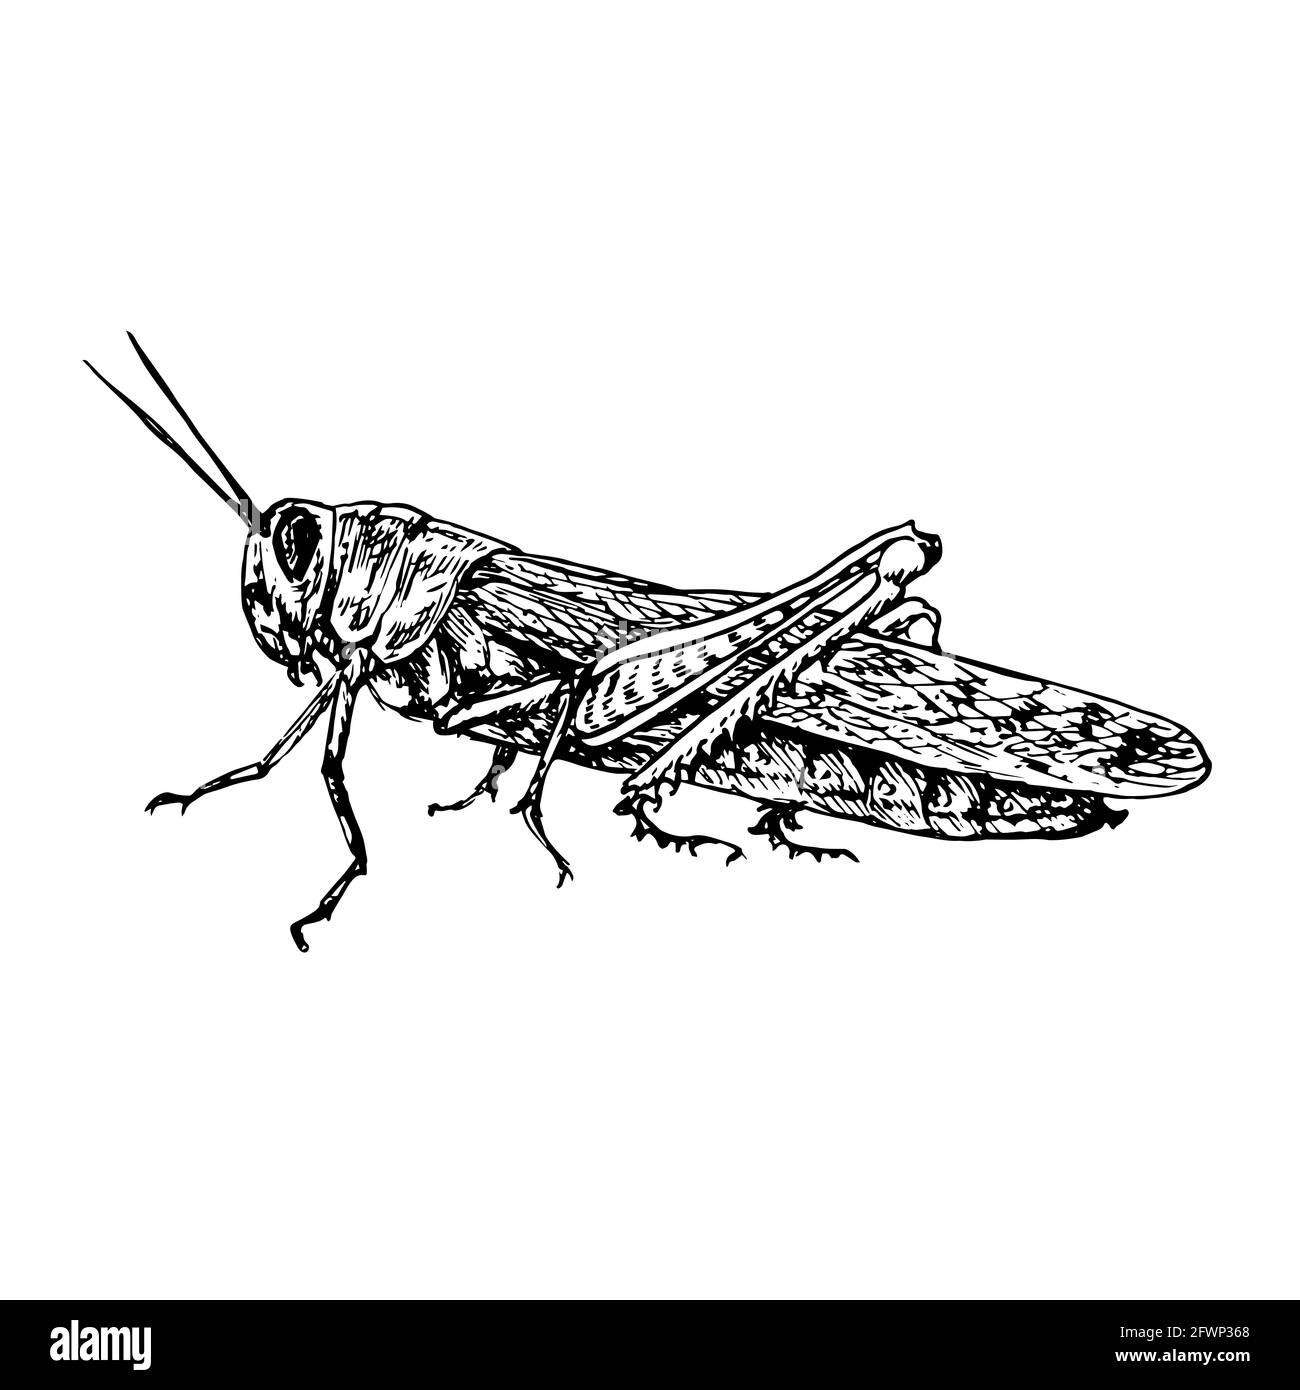 Wanderheuschrecke (Locusta migratoria) sitzende Seitenansicht, Tiefdruck-Stil Tusche Zeichnung Illustration isoliert auf weiß Stockfoto